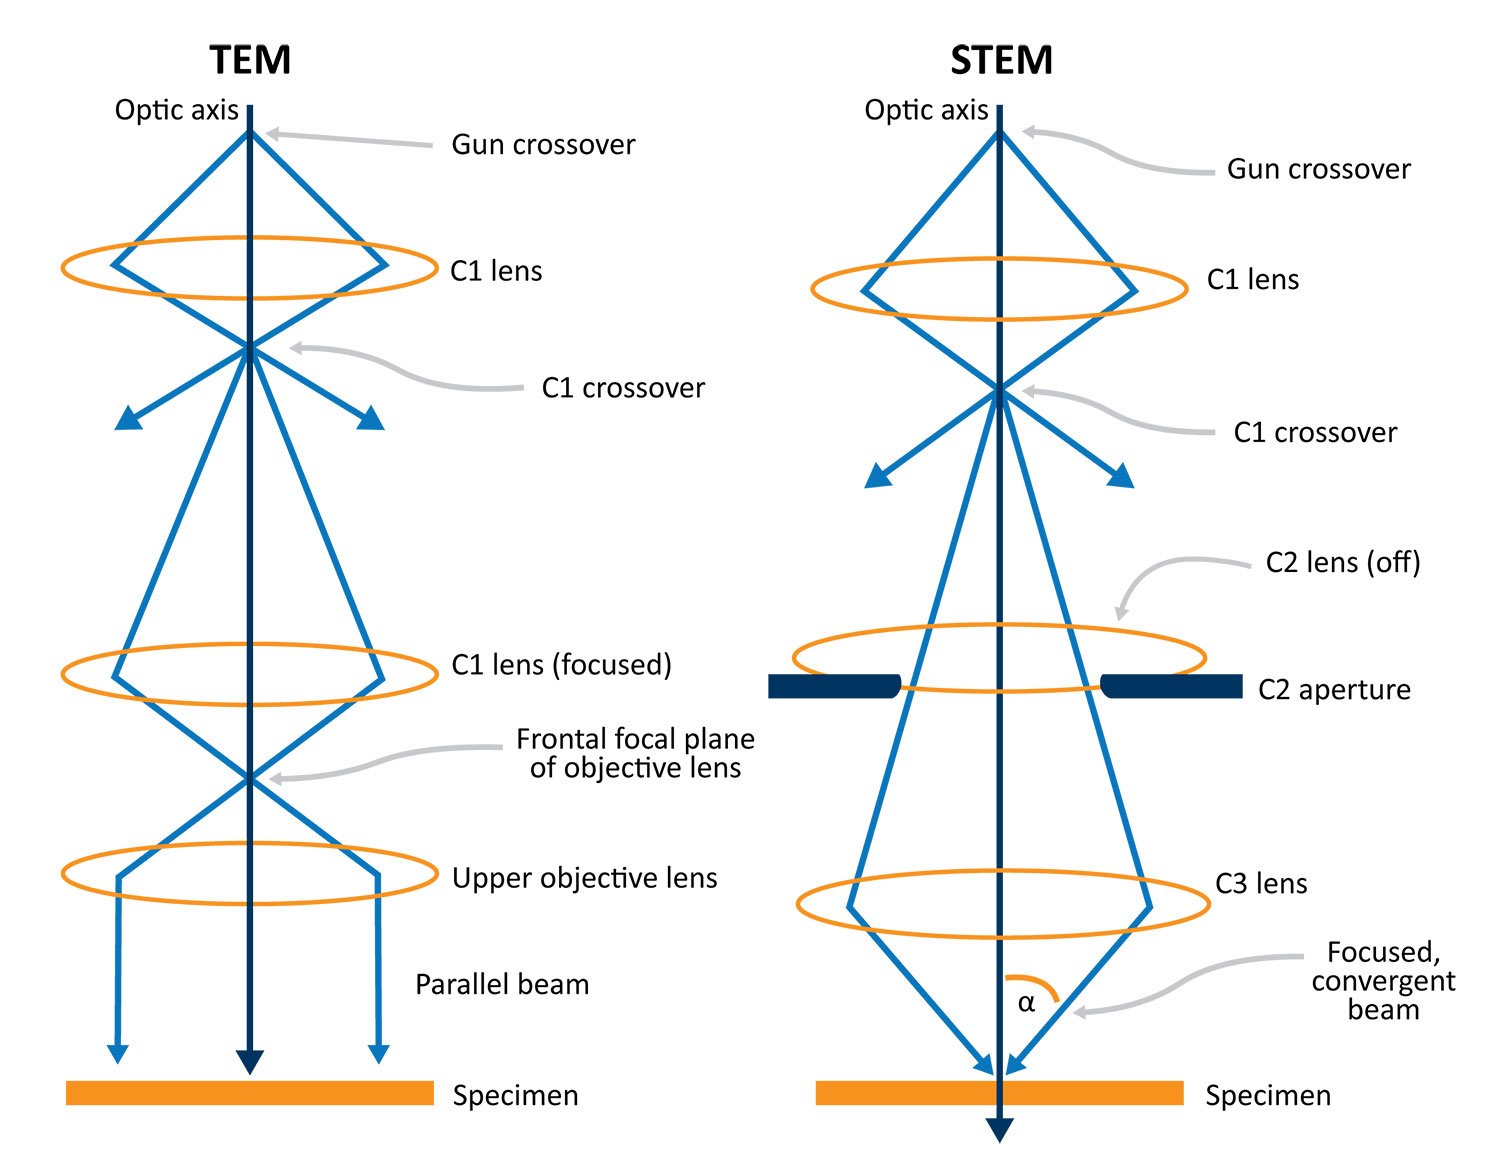 Schematic diagram of the beam formation optics in TEM vs STEM